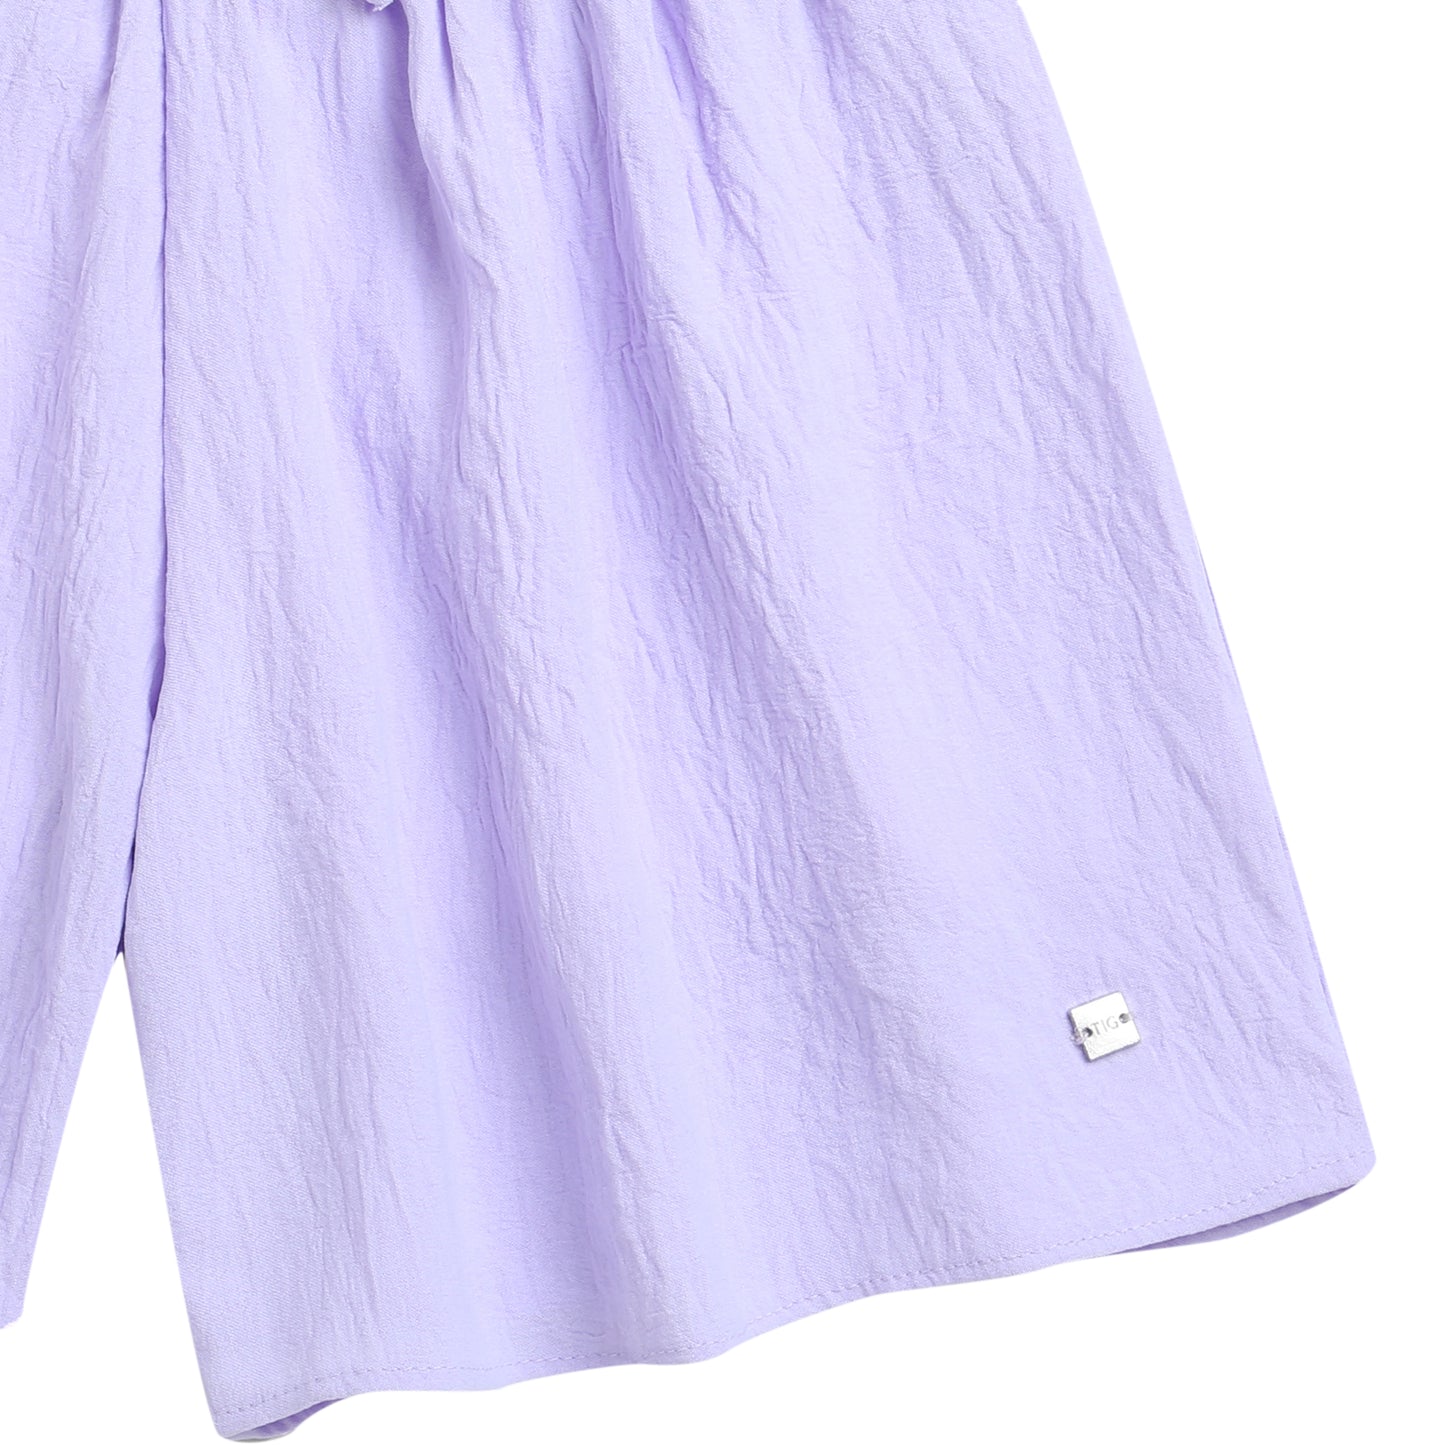 Paper Bag Shorts In Lavender